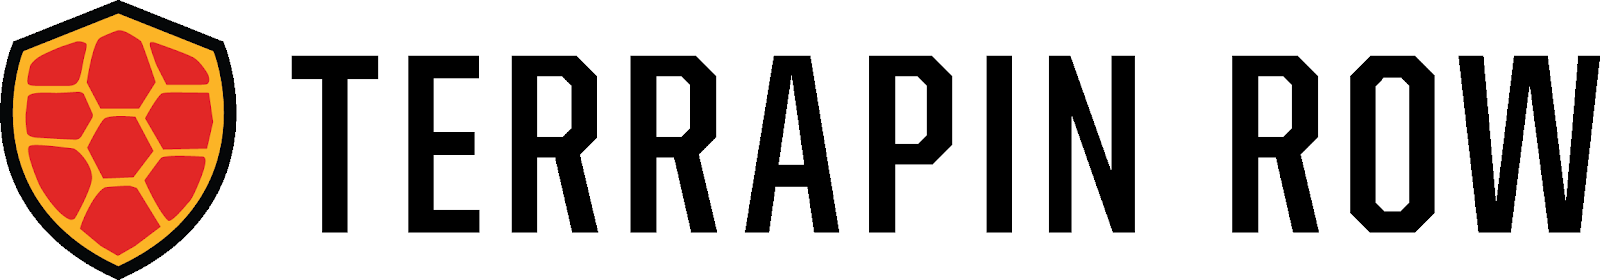 Terrapin Row Logo